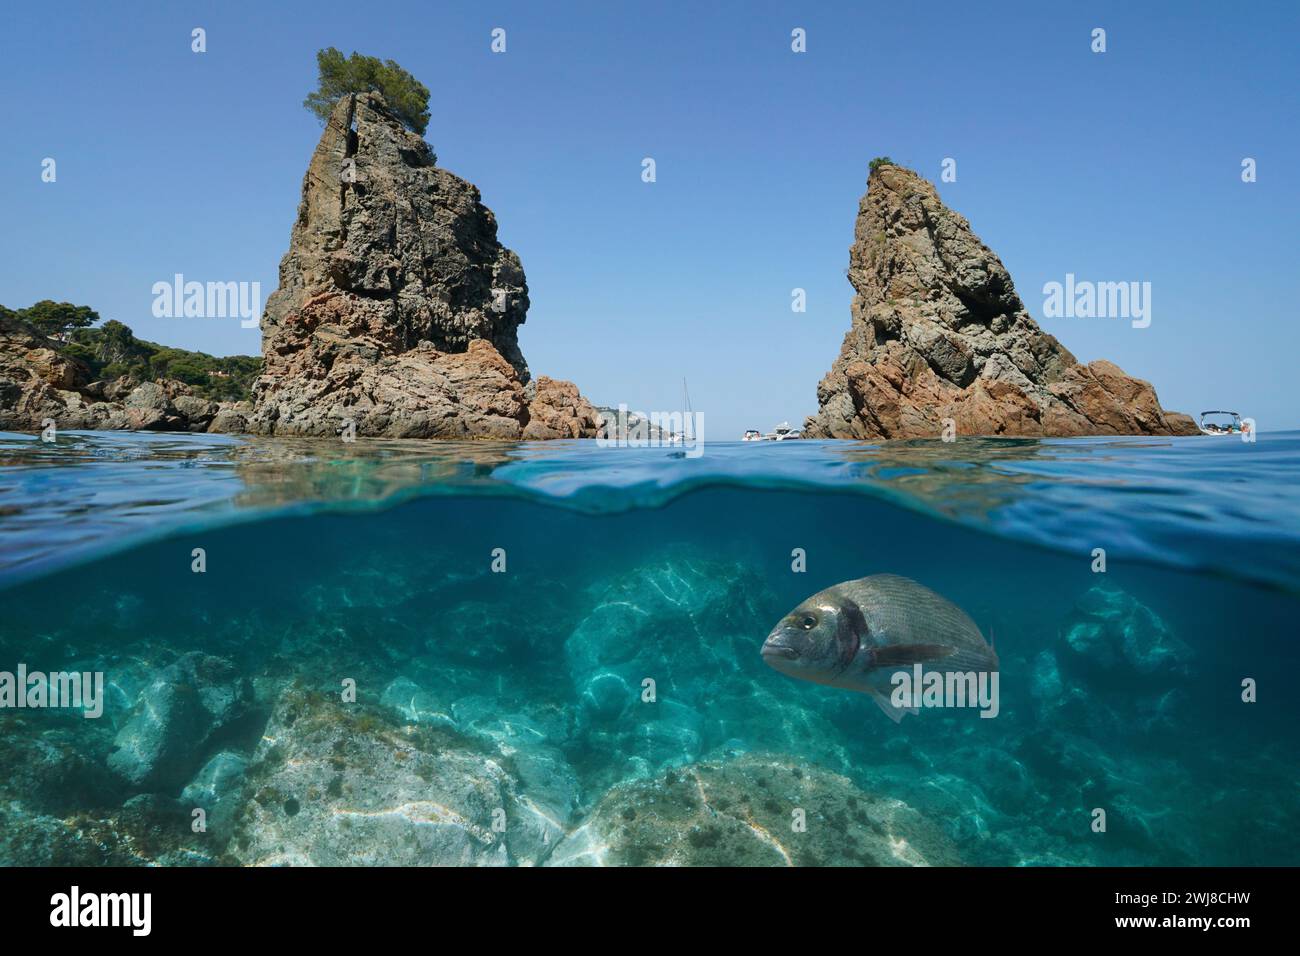 Espagne Costa Brava, îlots rocheux côtiers dans la mer Méditerranée avec un poisson sous l'eau, vue divisée à moitié sur et sous la surface de l'eau, scène naturelle Banque D'Images